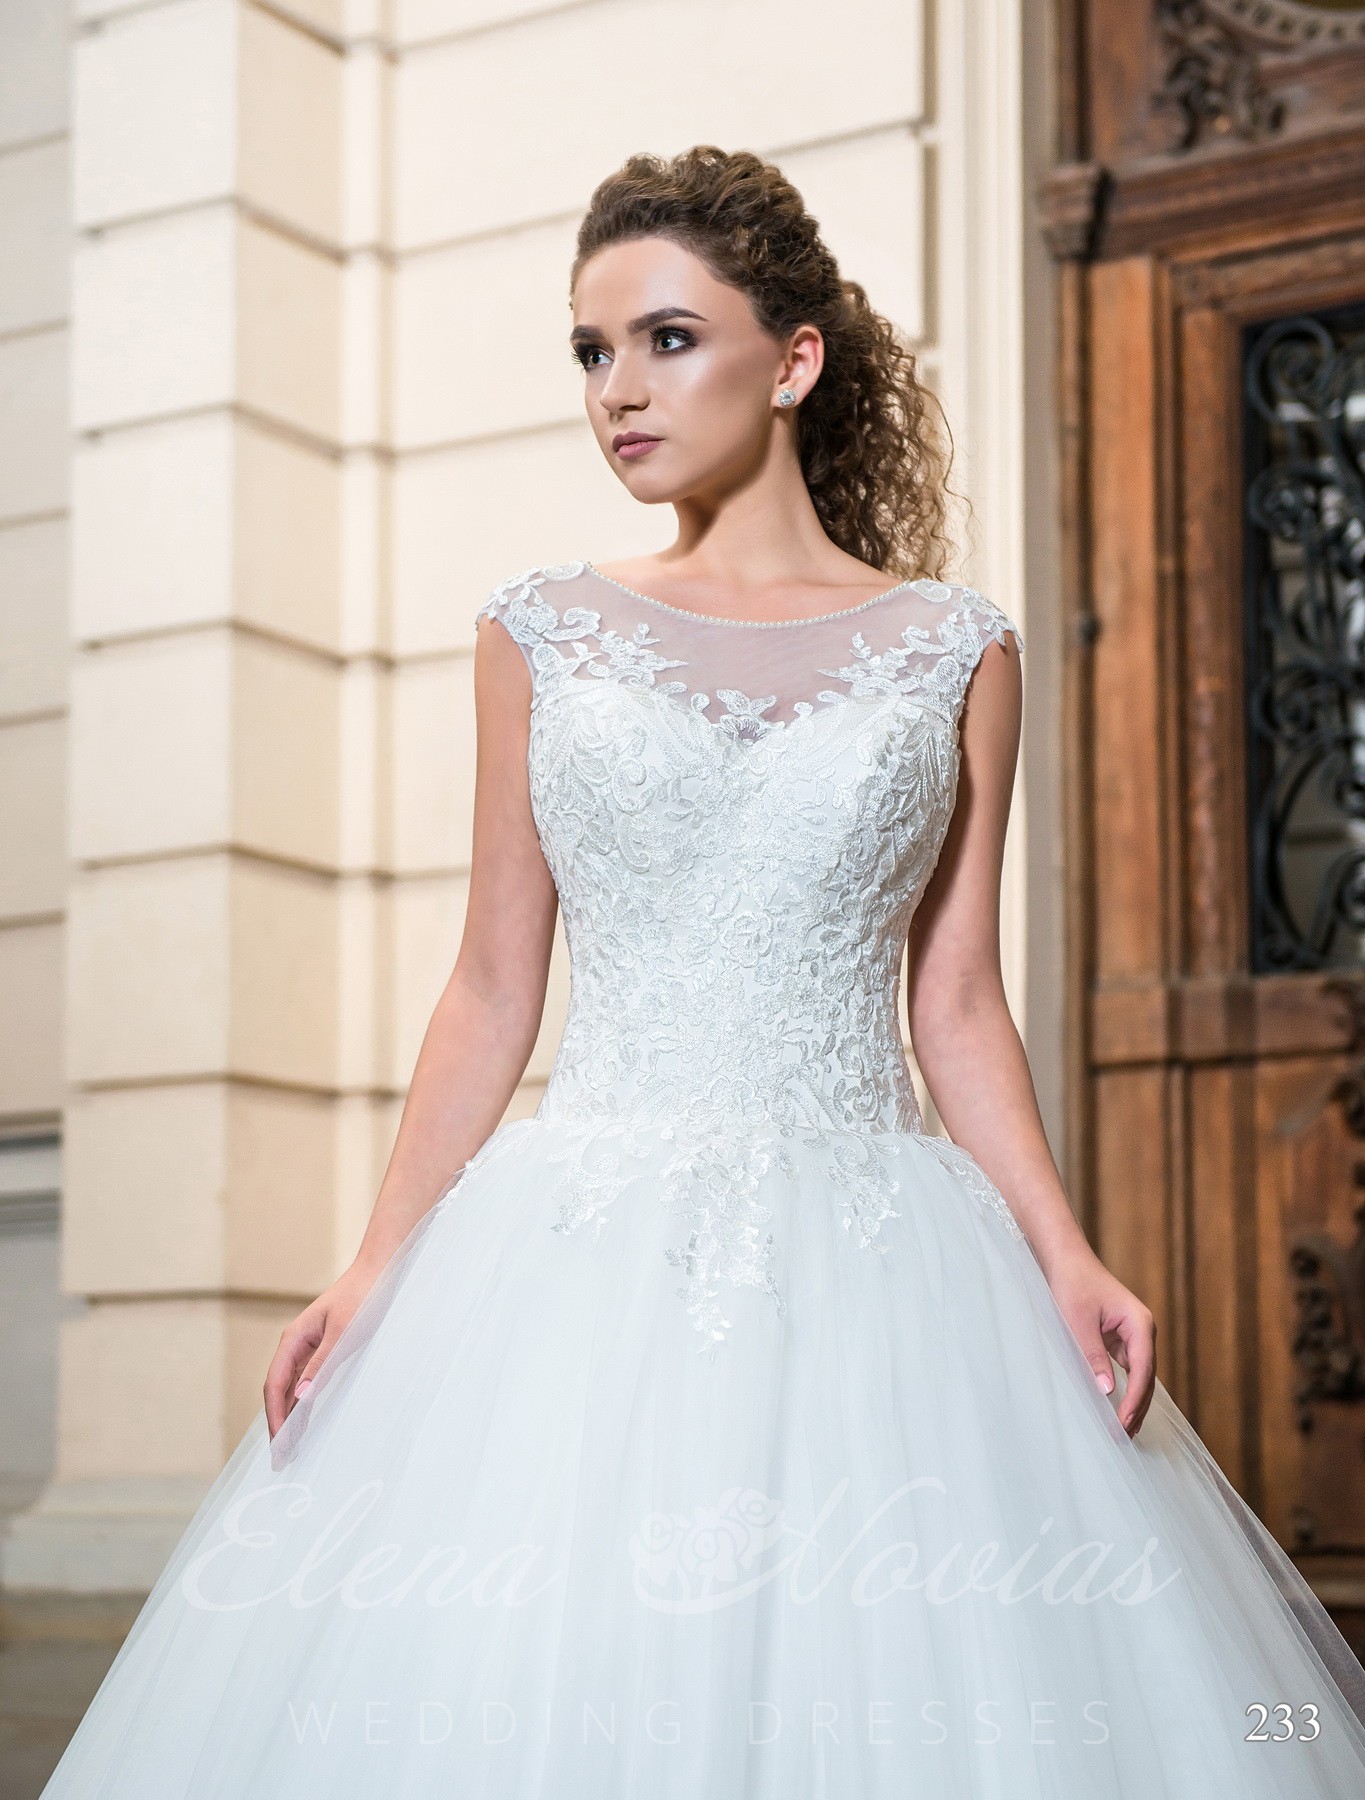 Свадебное платье с вышивкой модель 233